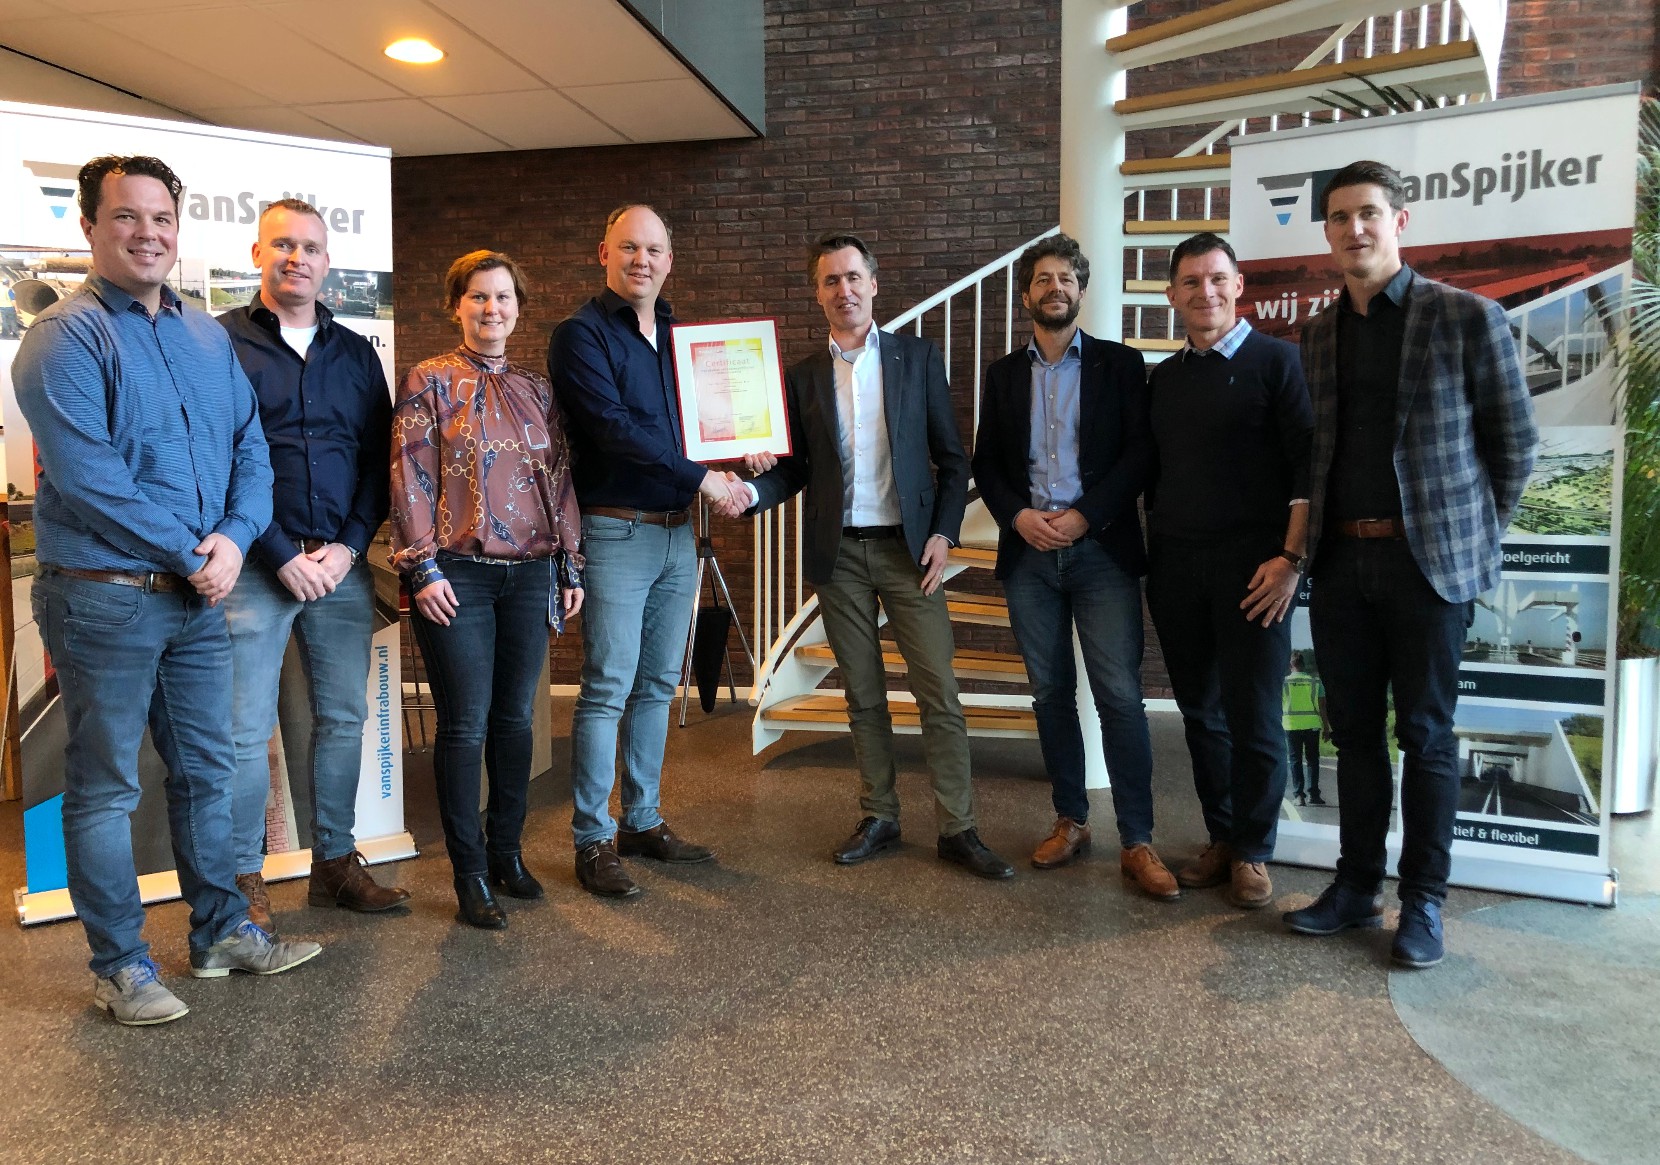 Afb: Van Spijker erkend voor TunnelAlliantie 2.0 door ProRail. 1